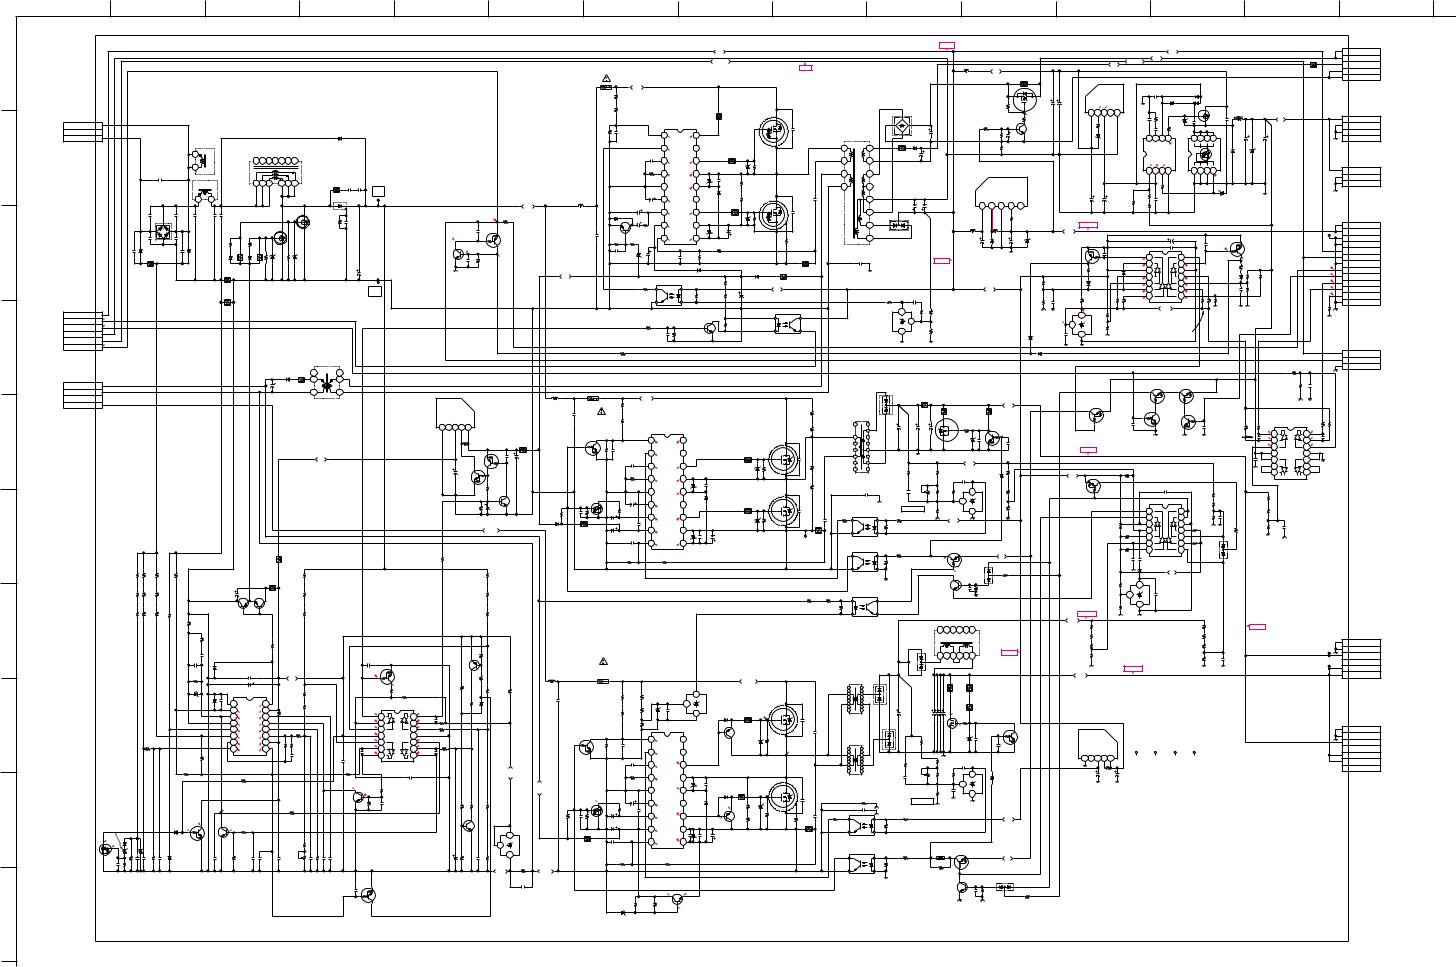 Sony G2 schematic